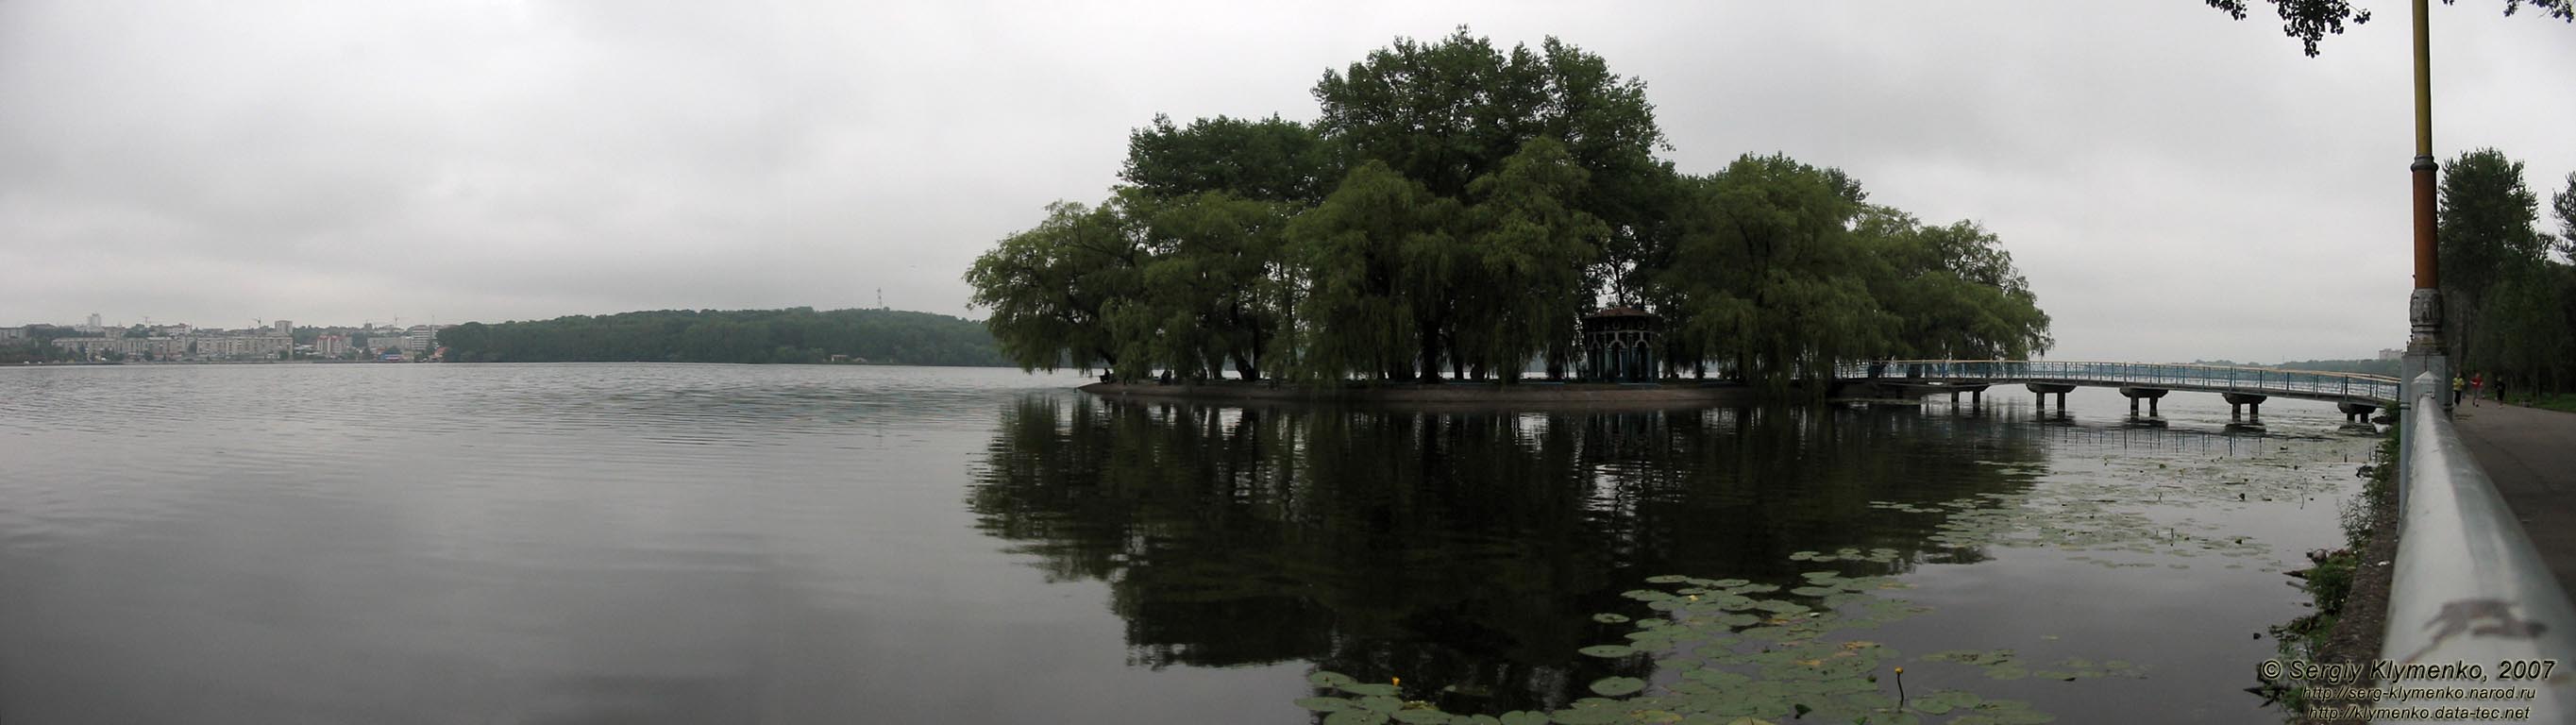 Фото. Тернополь. Панорама Тернопольского озера.